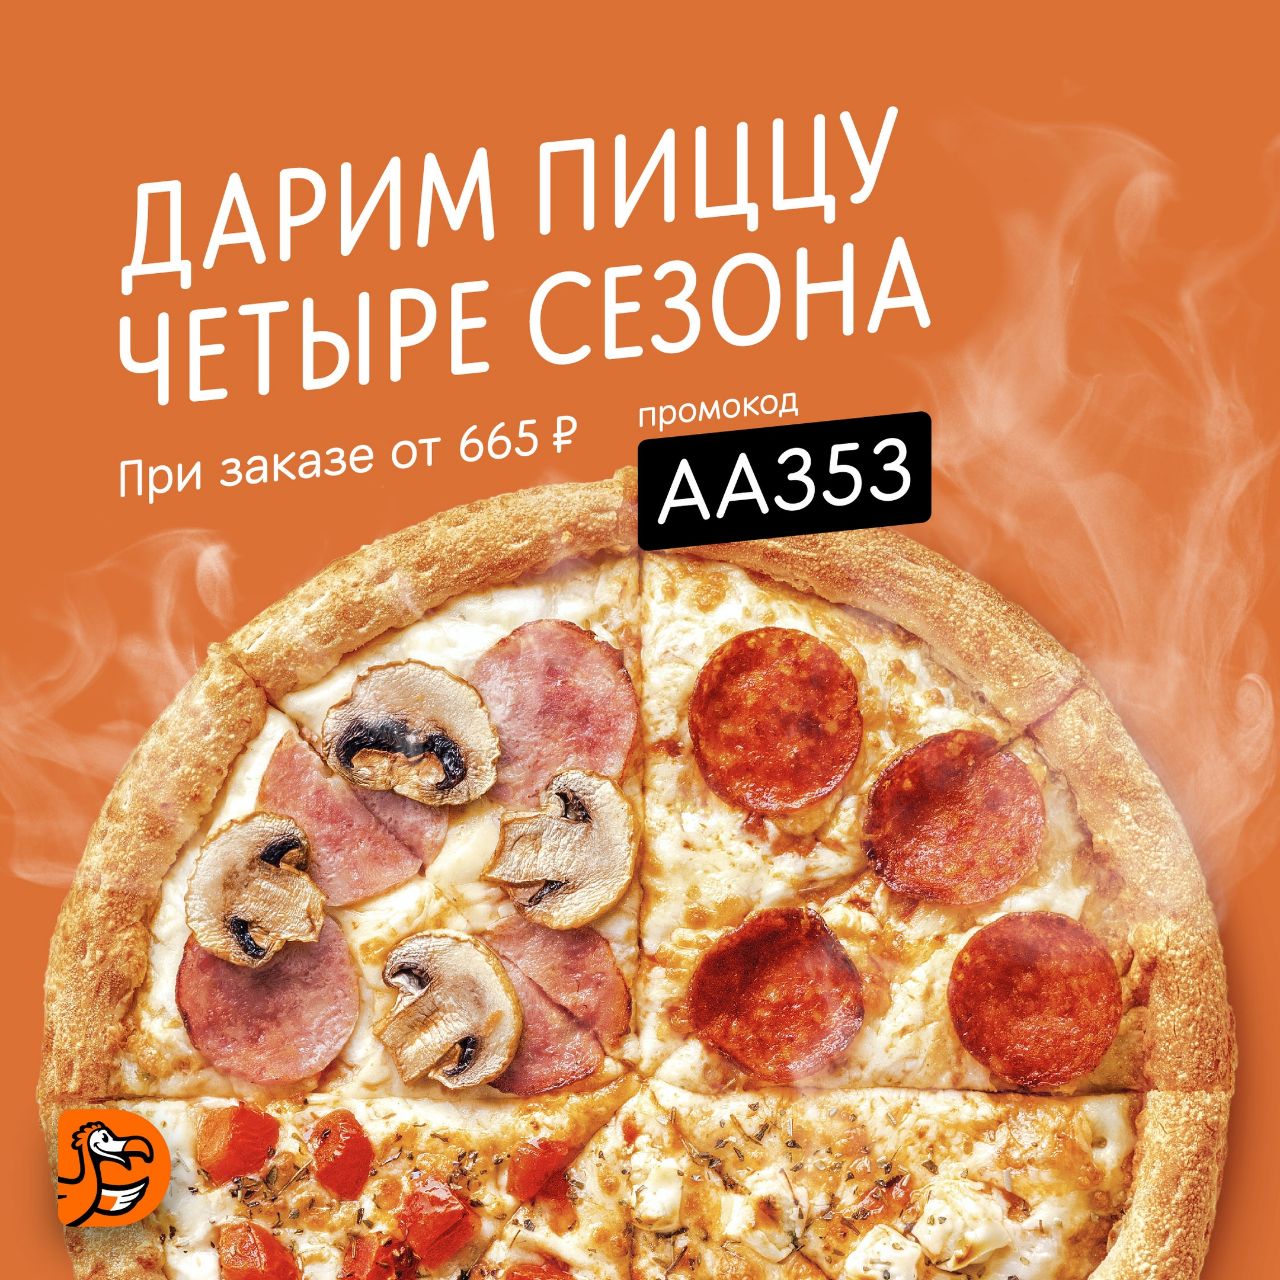 пицца четыре сезона отзывы фото 53